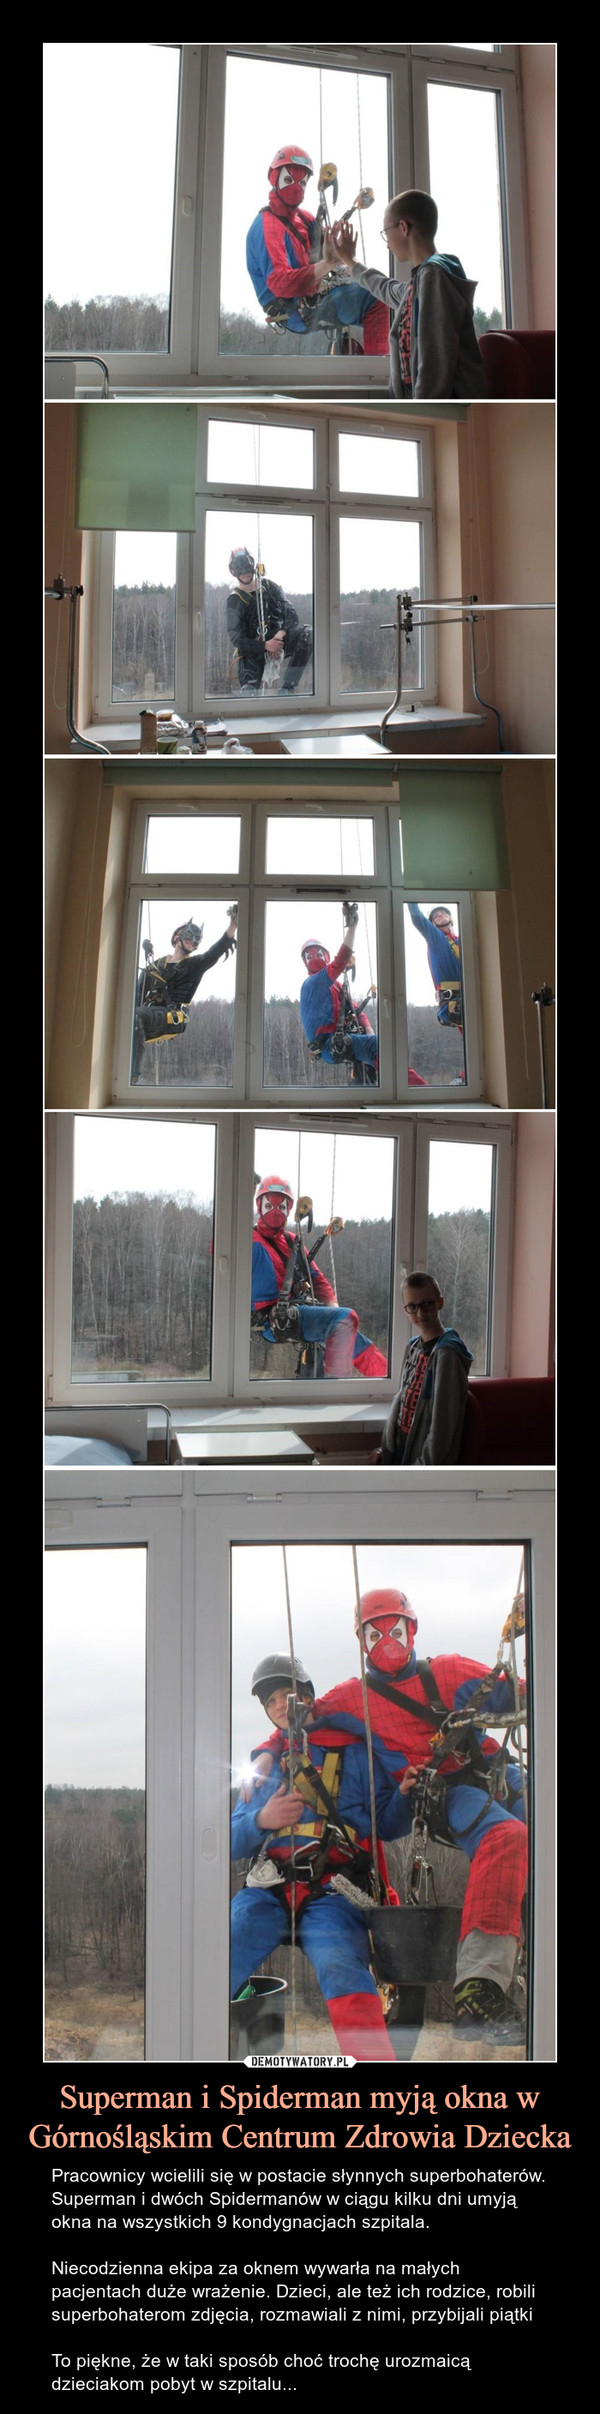 Superman i Spiderman myją okna w Górnośląskim Centrum Zdrowia Dziecka – Pracownicy wcielili się w postacie słynnych superbohaterów. Superman i dwóch Spidermanów w ciągu kilku dni umyją okna na wszystkich 9 kondygnacjach szpitala.Niecodzienna ekipa za oknem wywarła na małych pacjentach duże wrażenie. Dzieci, ale też ich rodzice, robili superbohaterom zdjęcia, rozmawiali z nimi, przybijali piątkiTo piękne, że w taki sposób choć trochę urozmaicą  dzieciakom pobyt w szpitalu... 